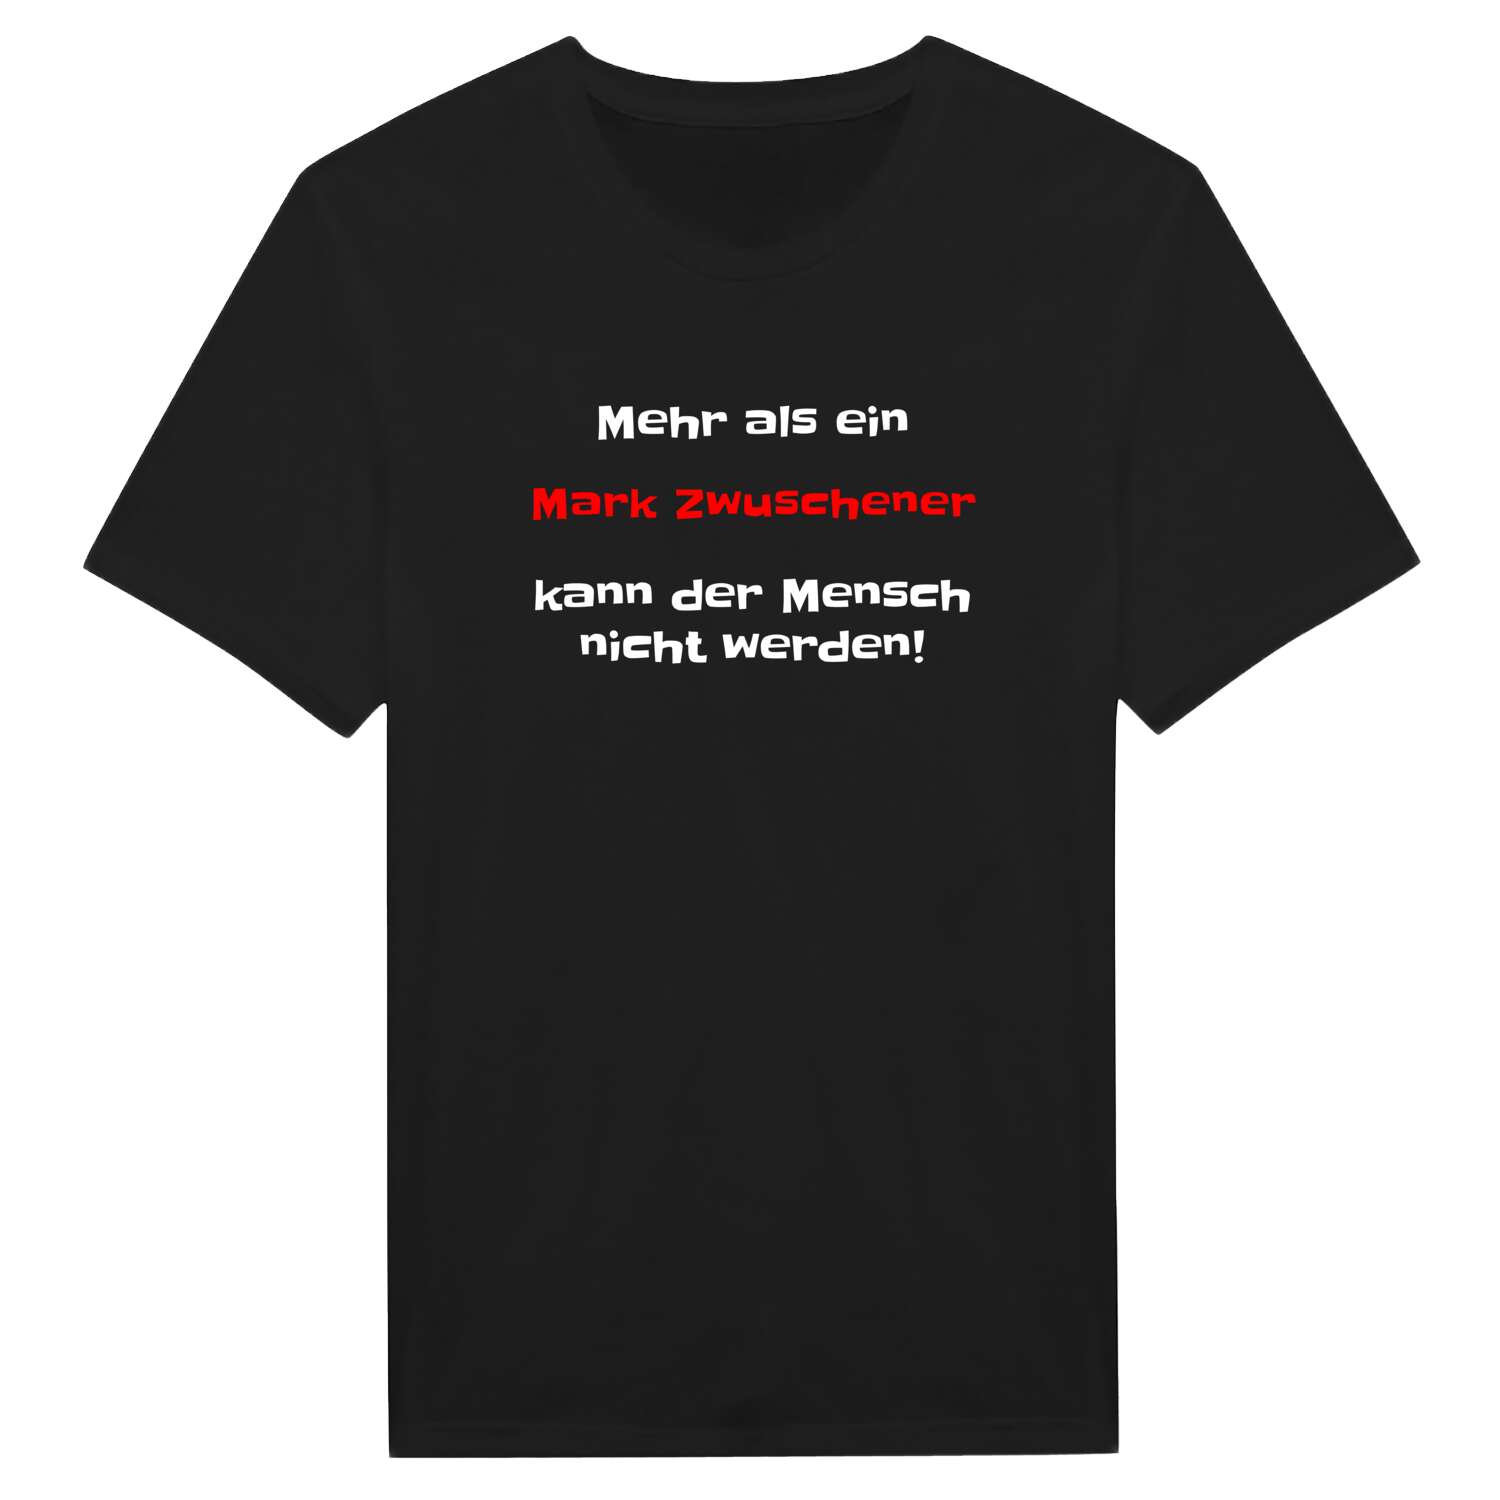 Mark Zwuschen T-Shirt »Mehr als ein«